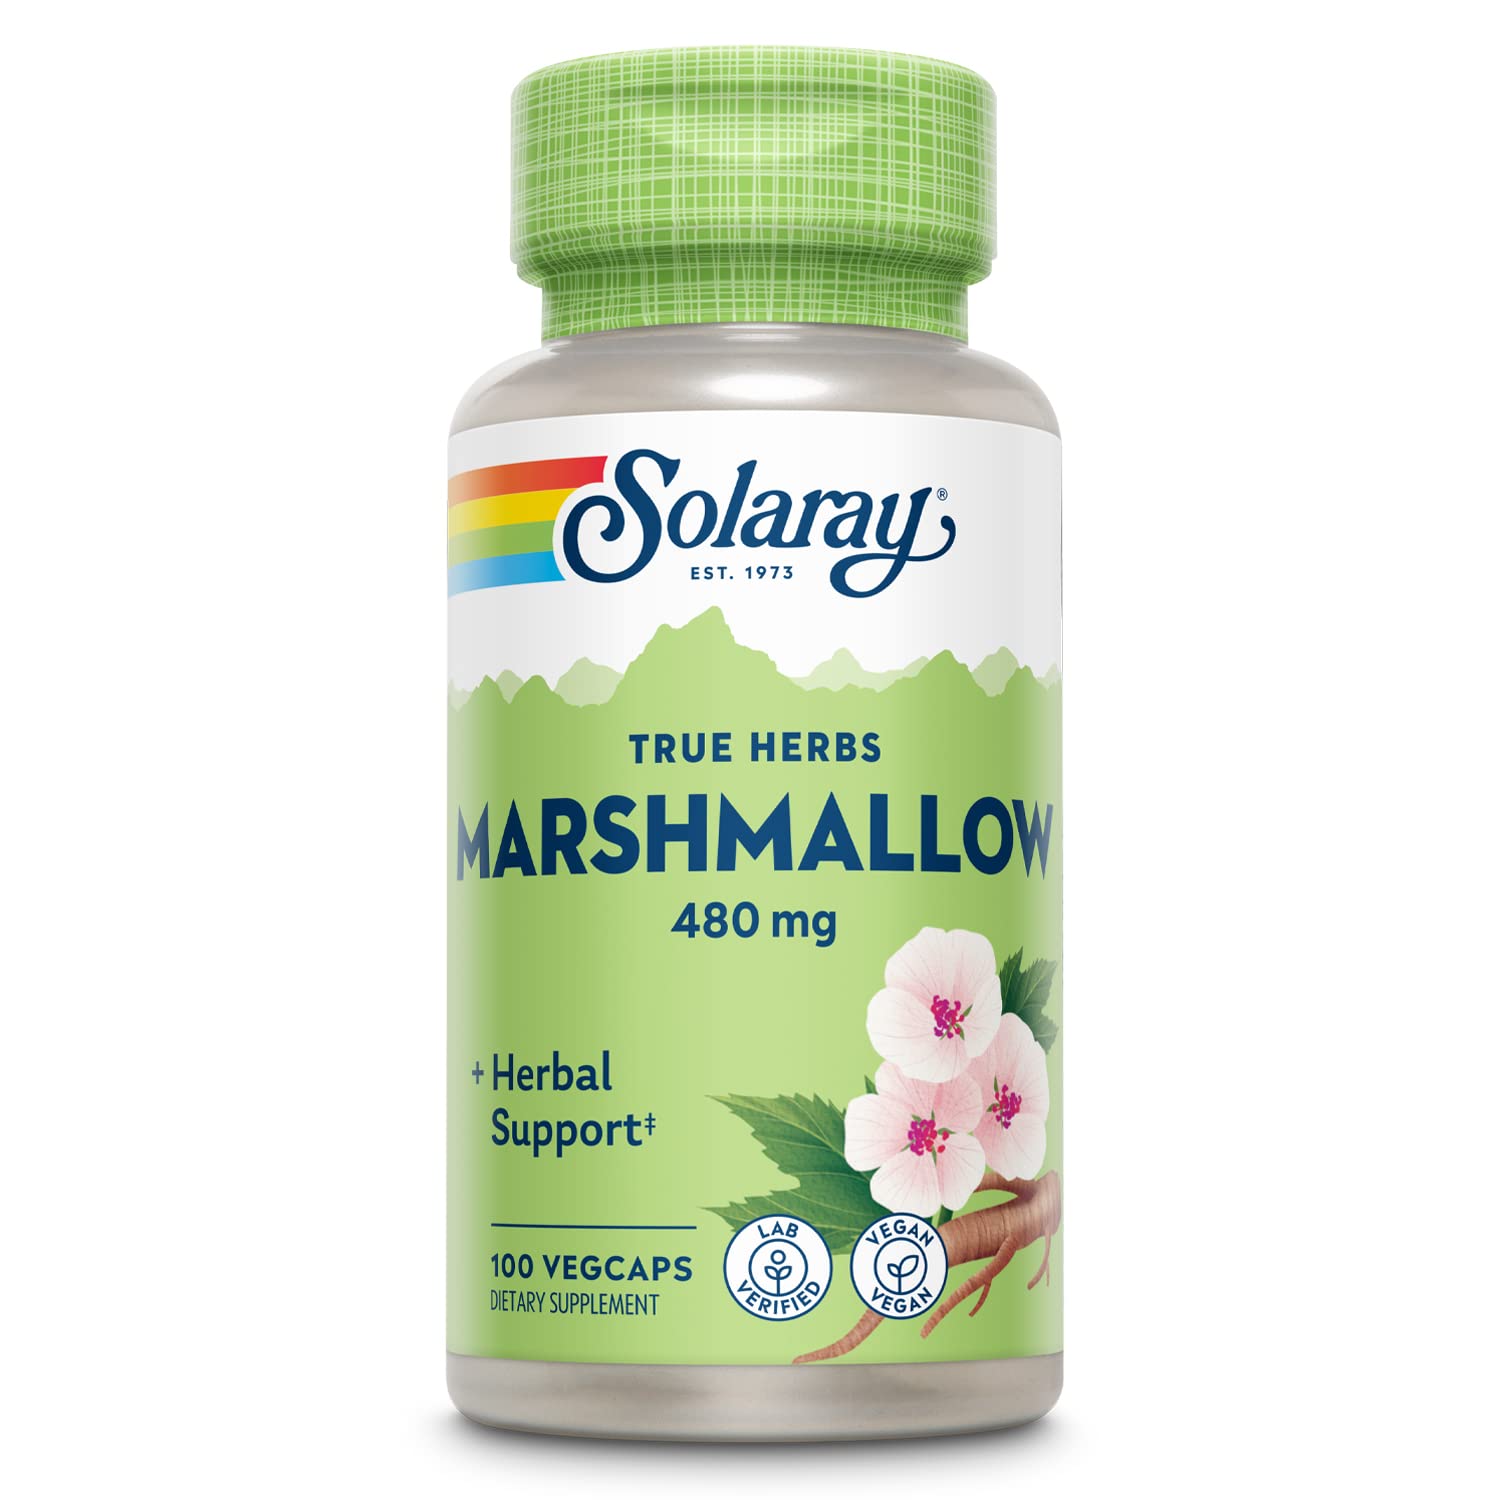 Solaray Marshmallow Root 480 mg - 100 VegCaps